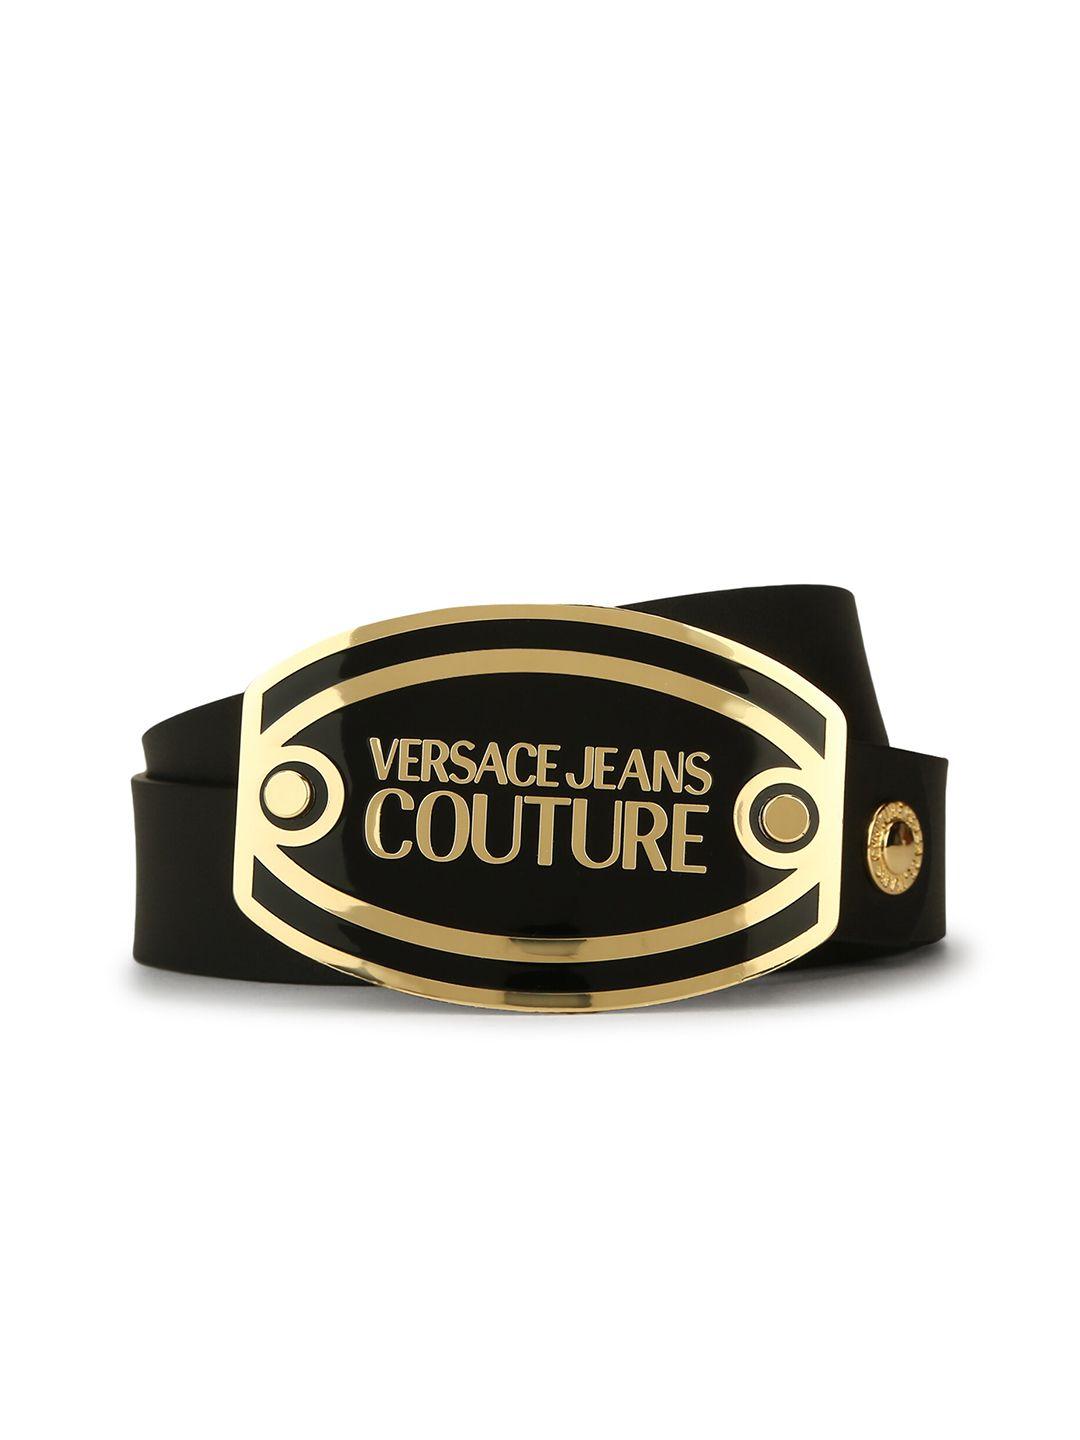 versace jeans couture men black leather belt